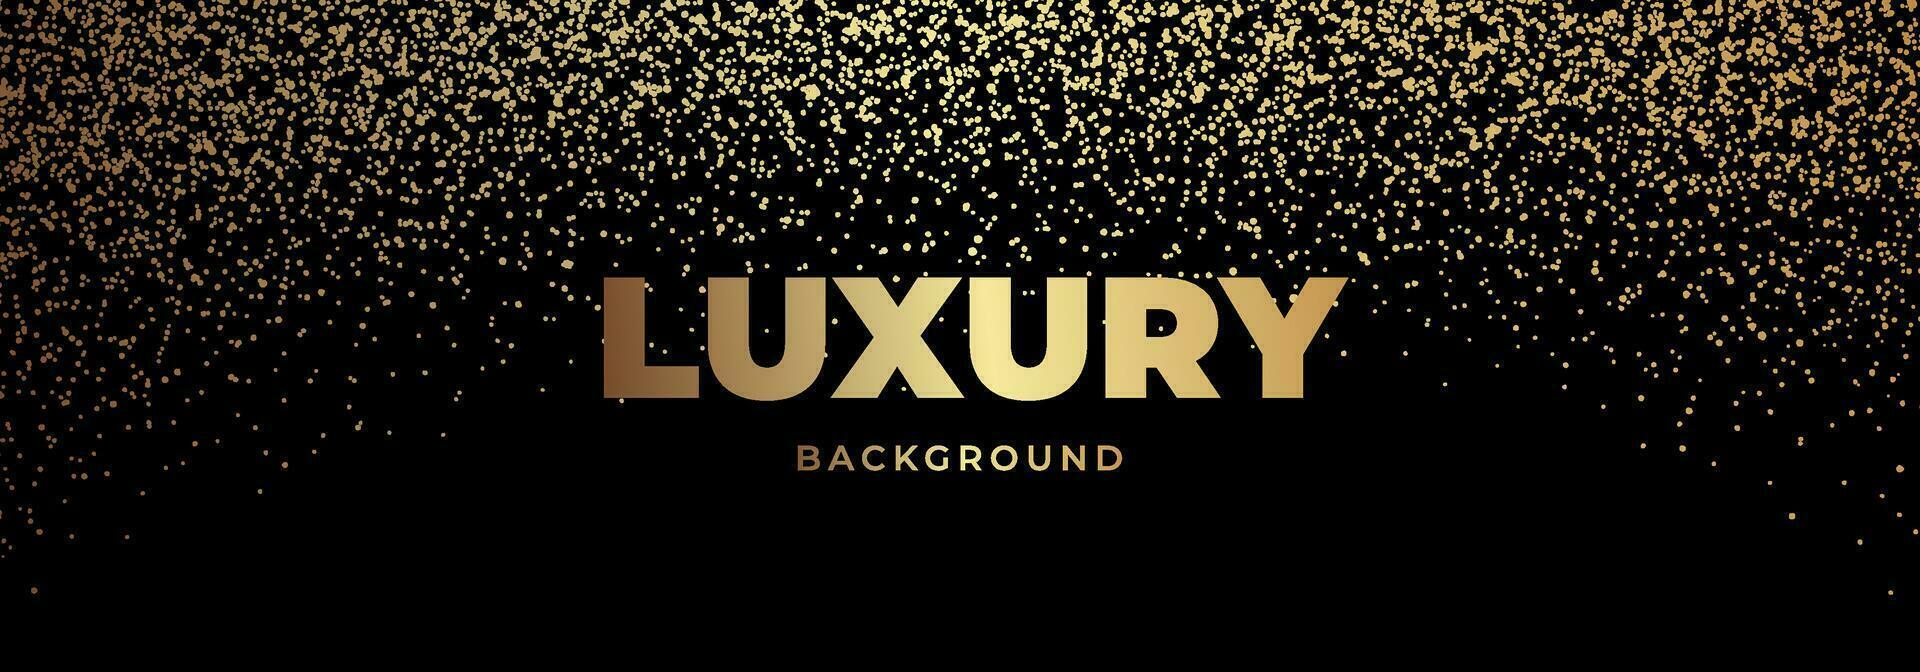 Luxus Banner mit golden funkeln. Deluxe glänzend Gold und schwarz Hintergrund vektor